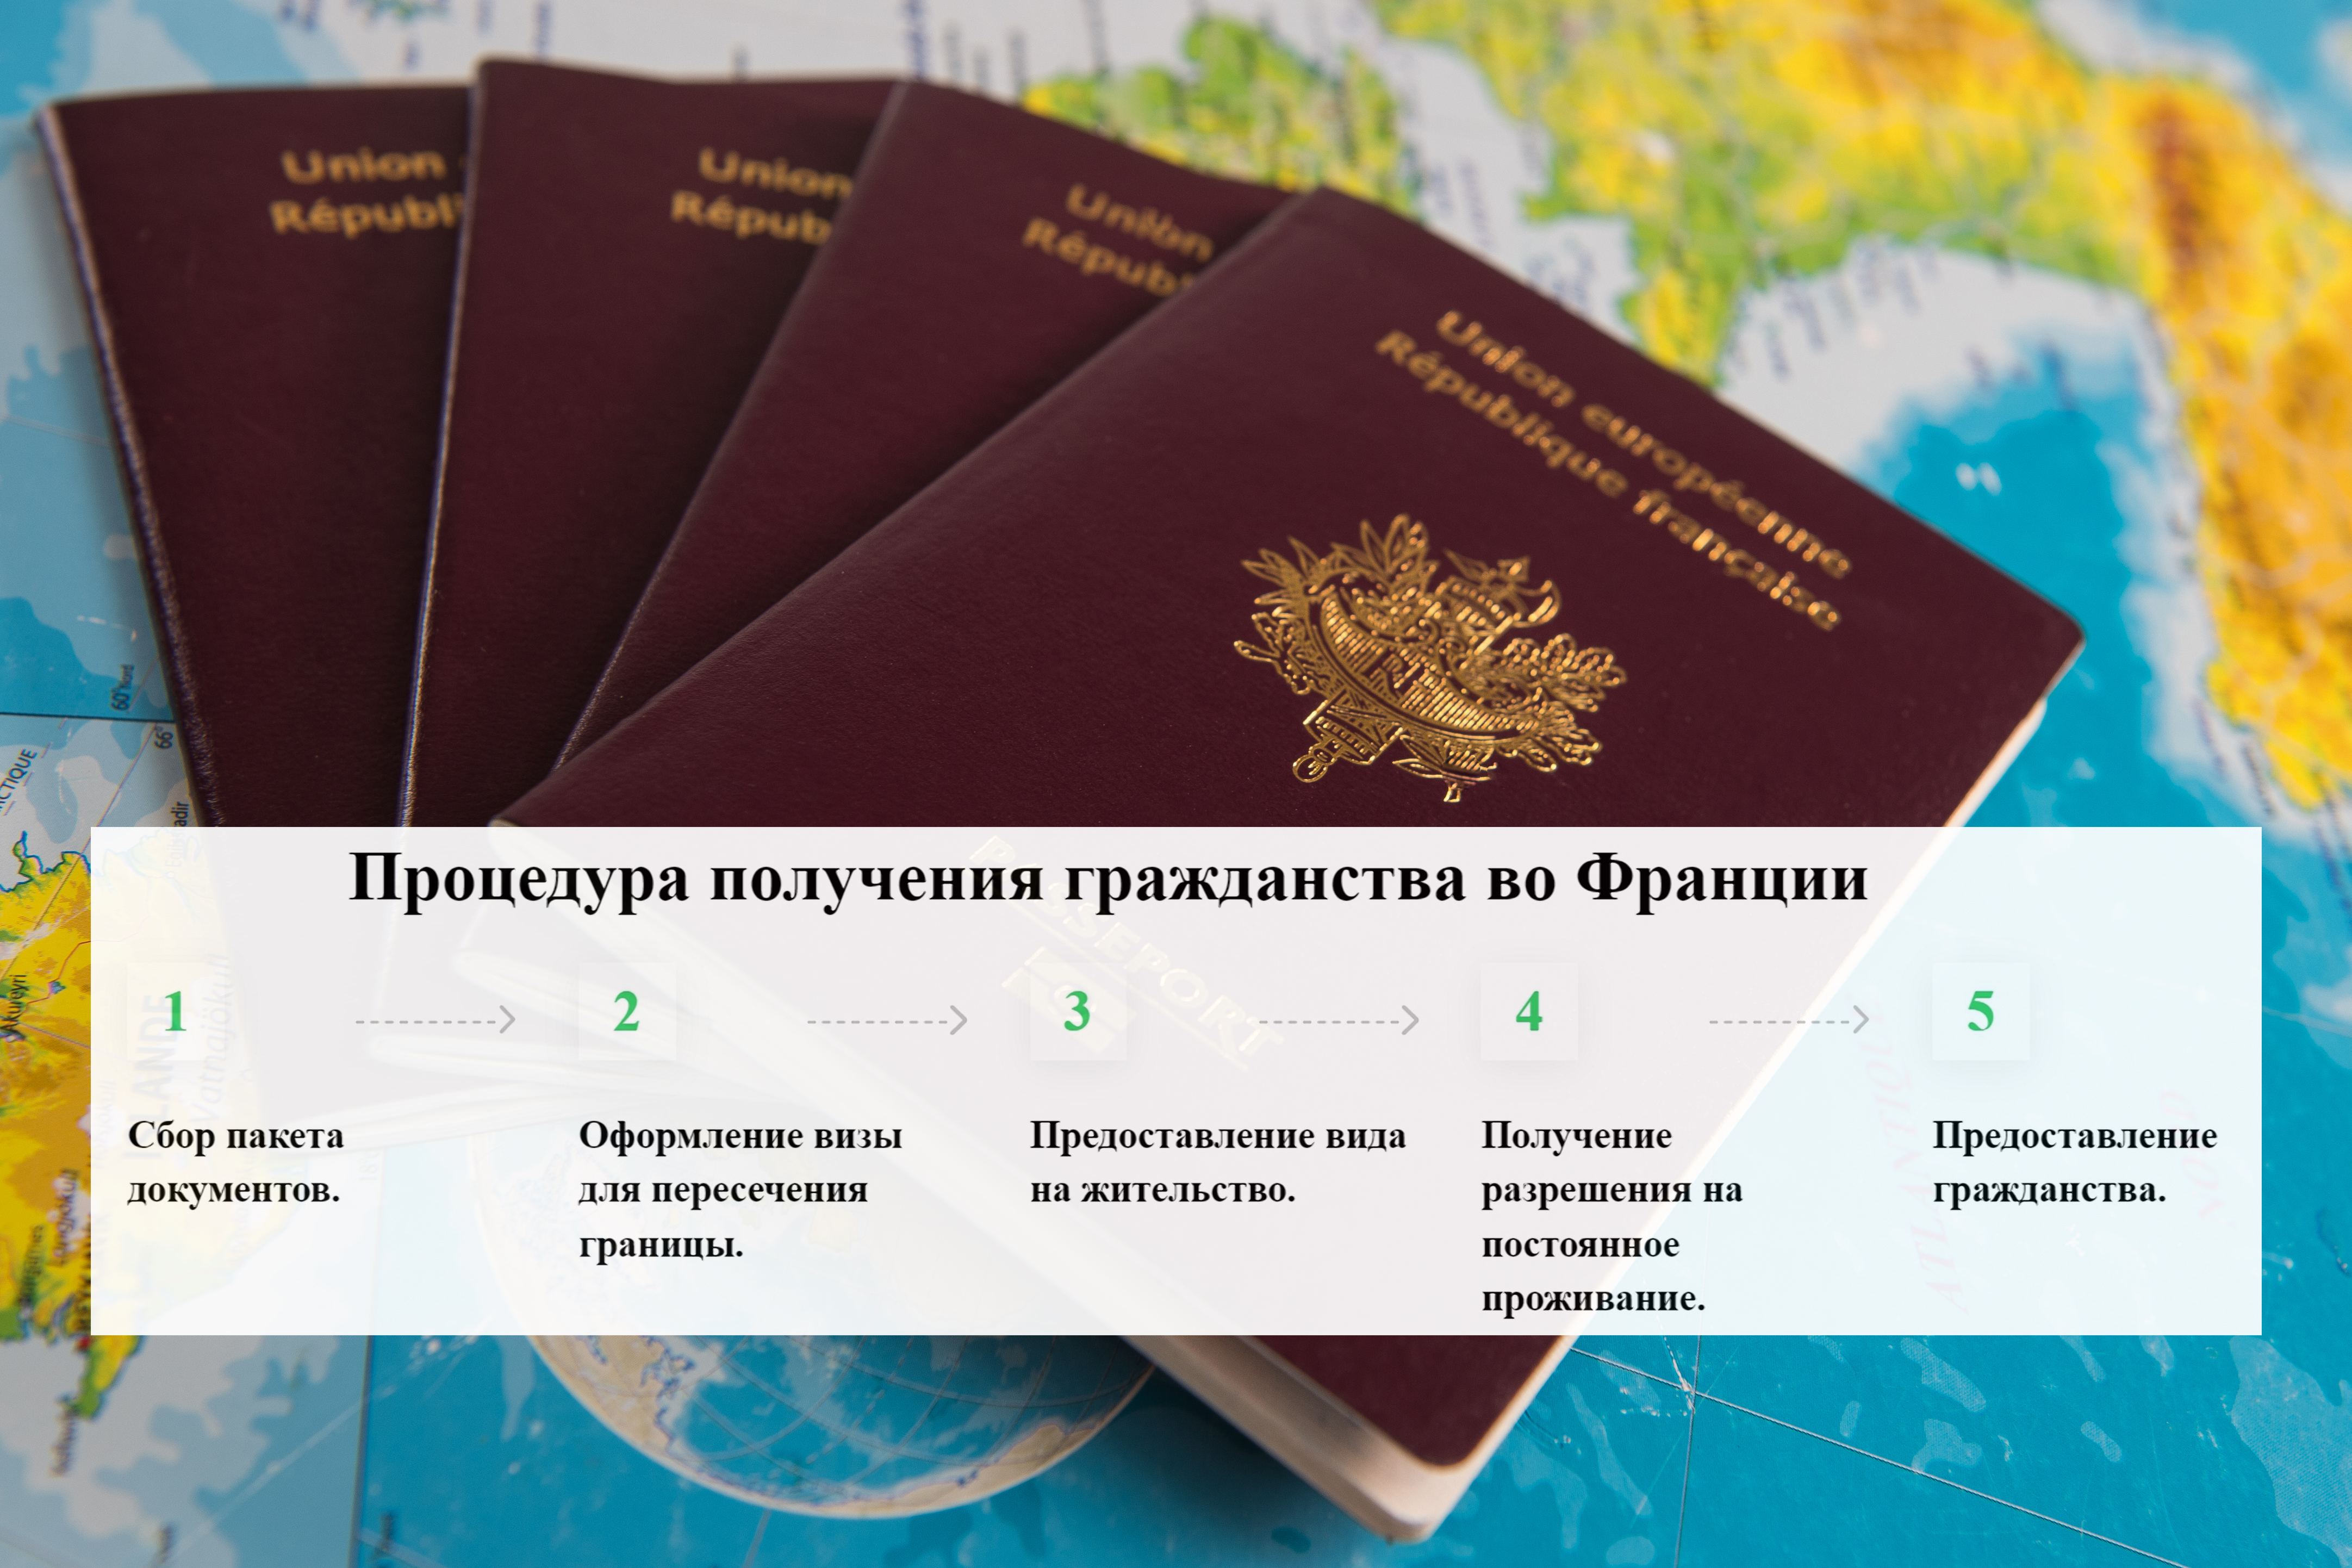 Для получения французского паспорта иностранцу необходимо пройти регламентированную законодательством процедуру